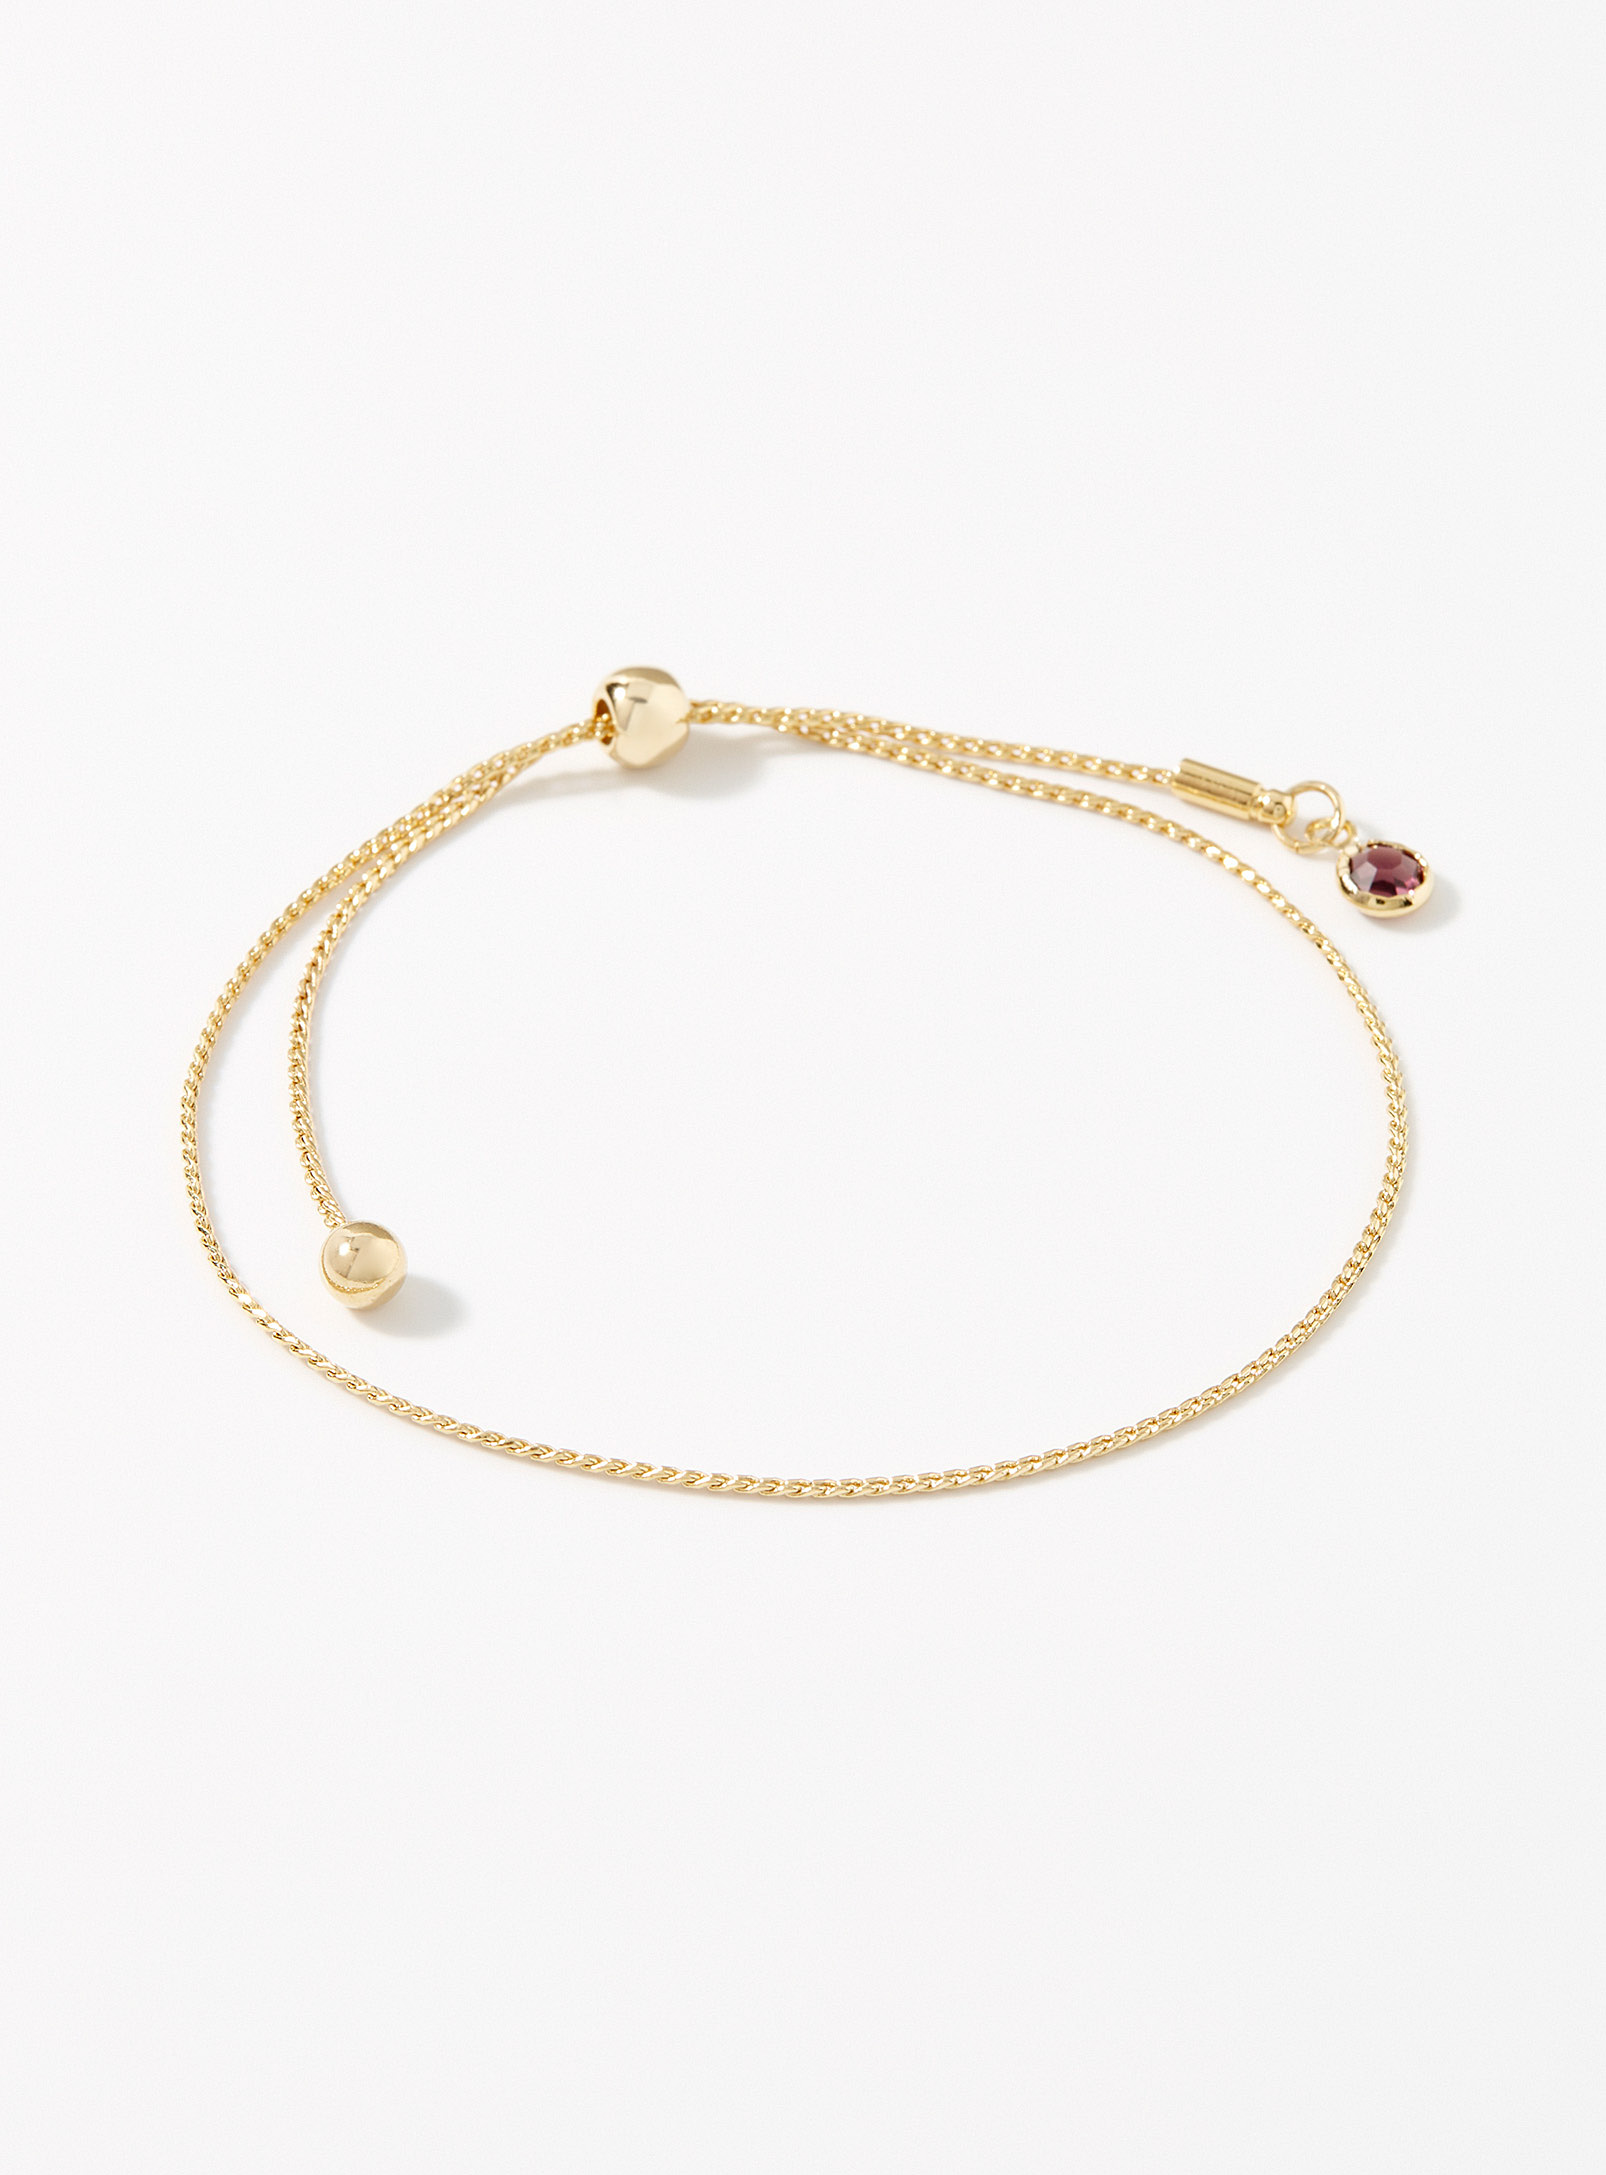 Simons - Le bracelet fine chaîne dorée